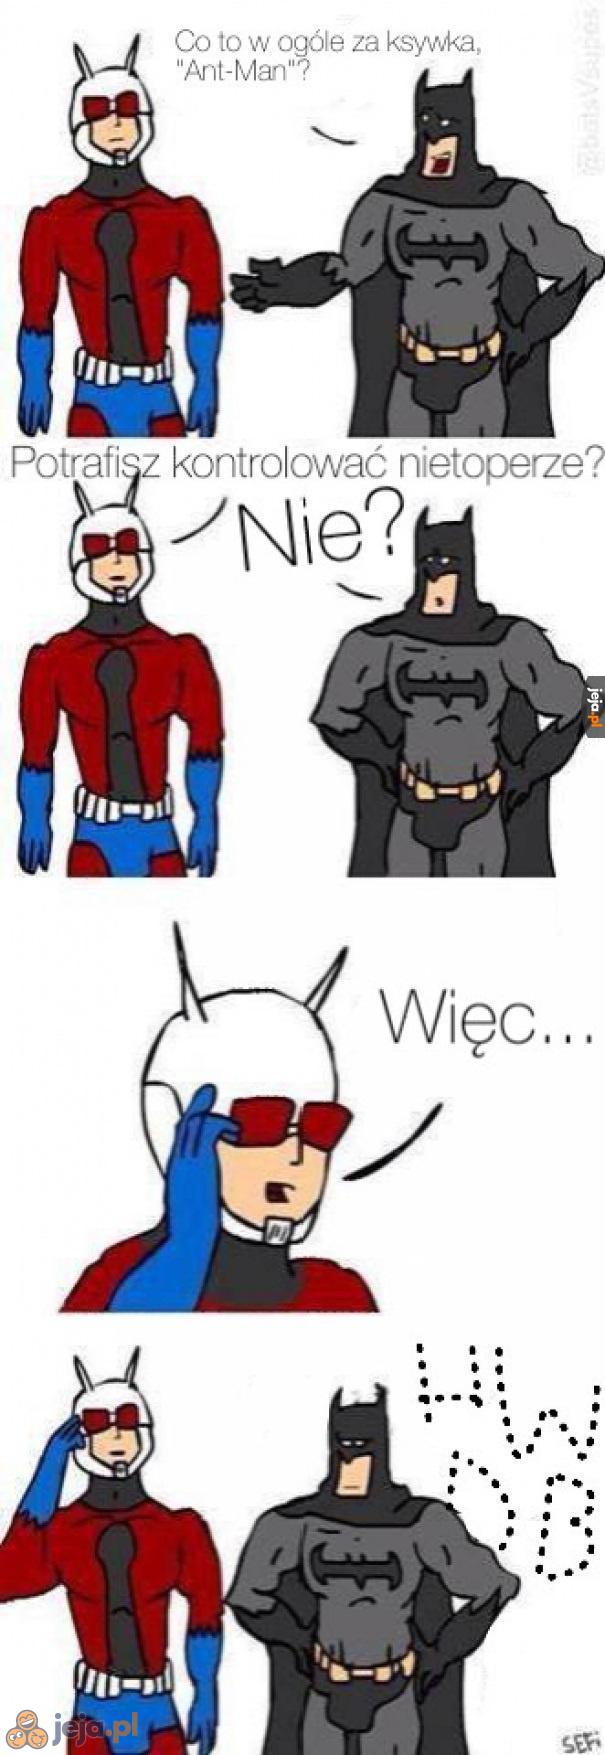 Batman? Pff!